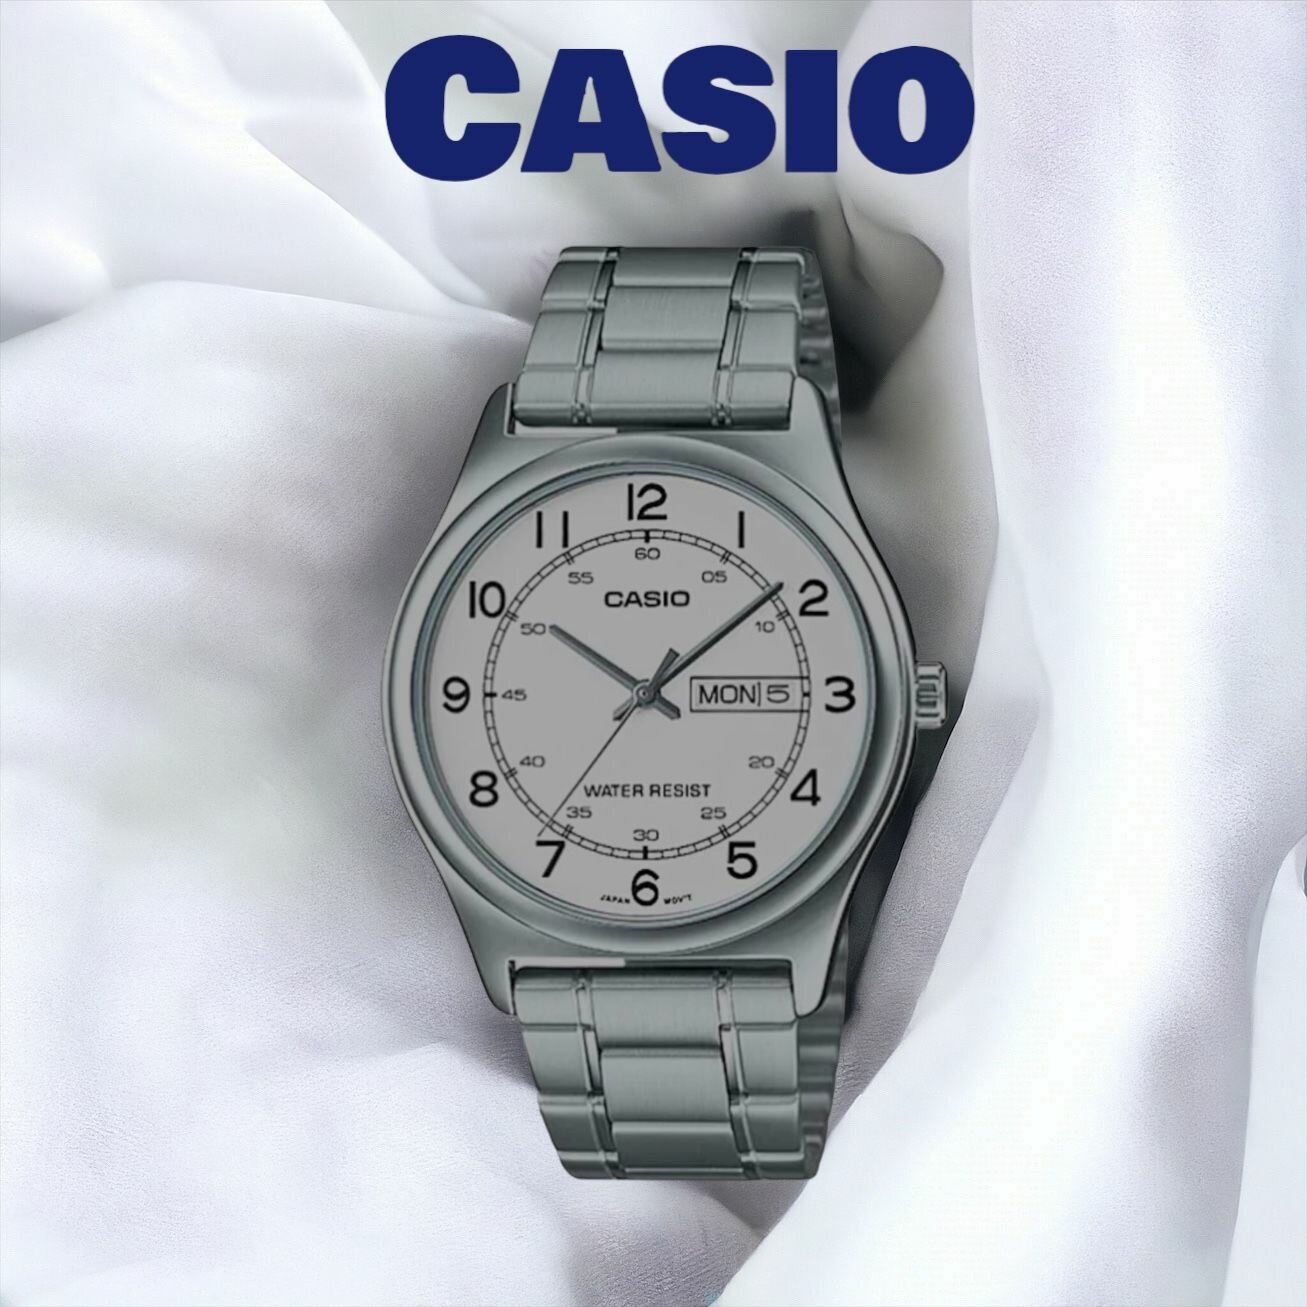 Наручные часы CASIO MTP-V006D-7B2